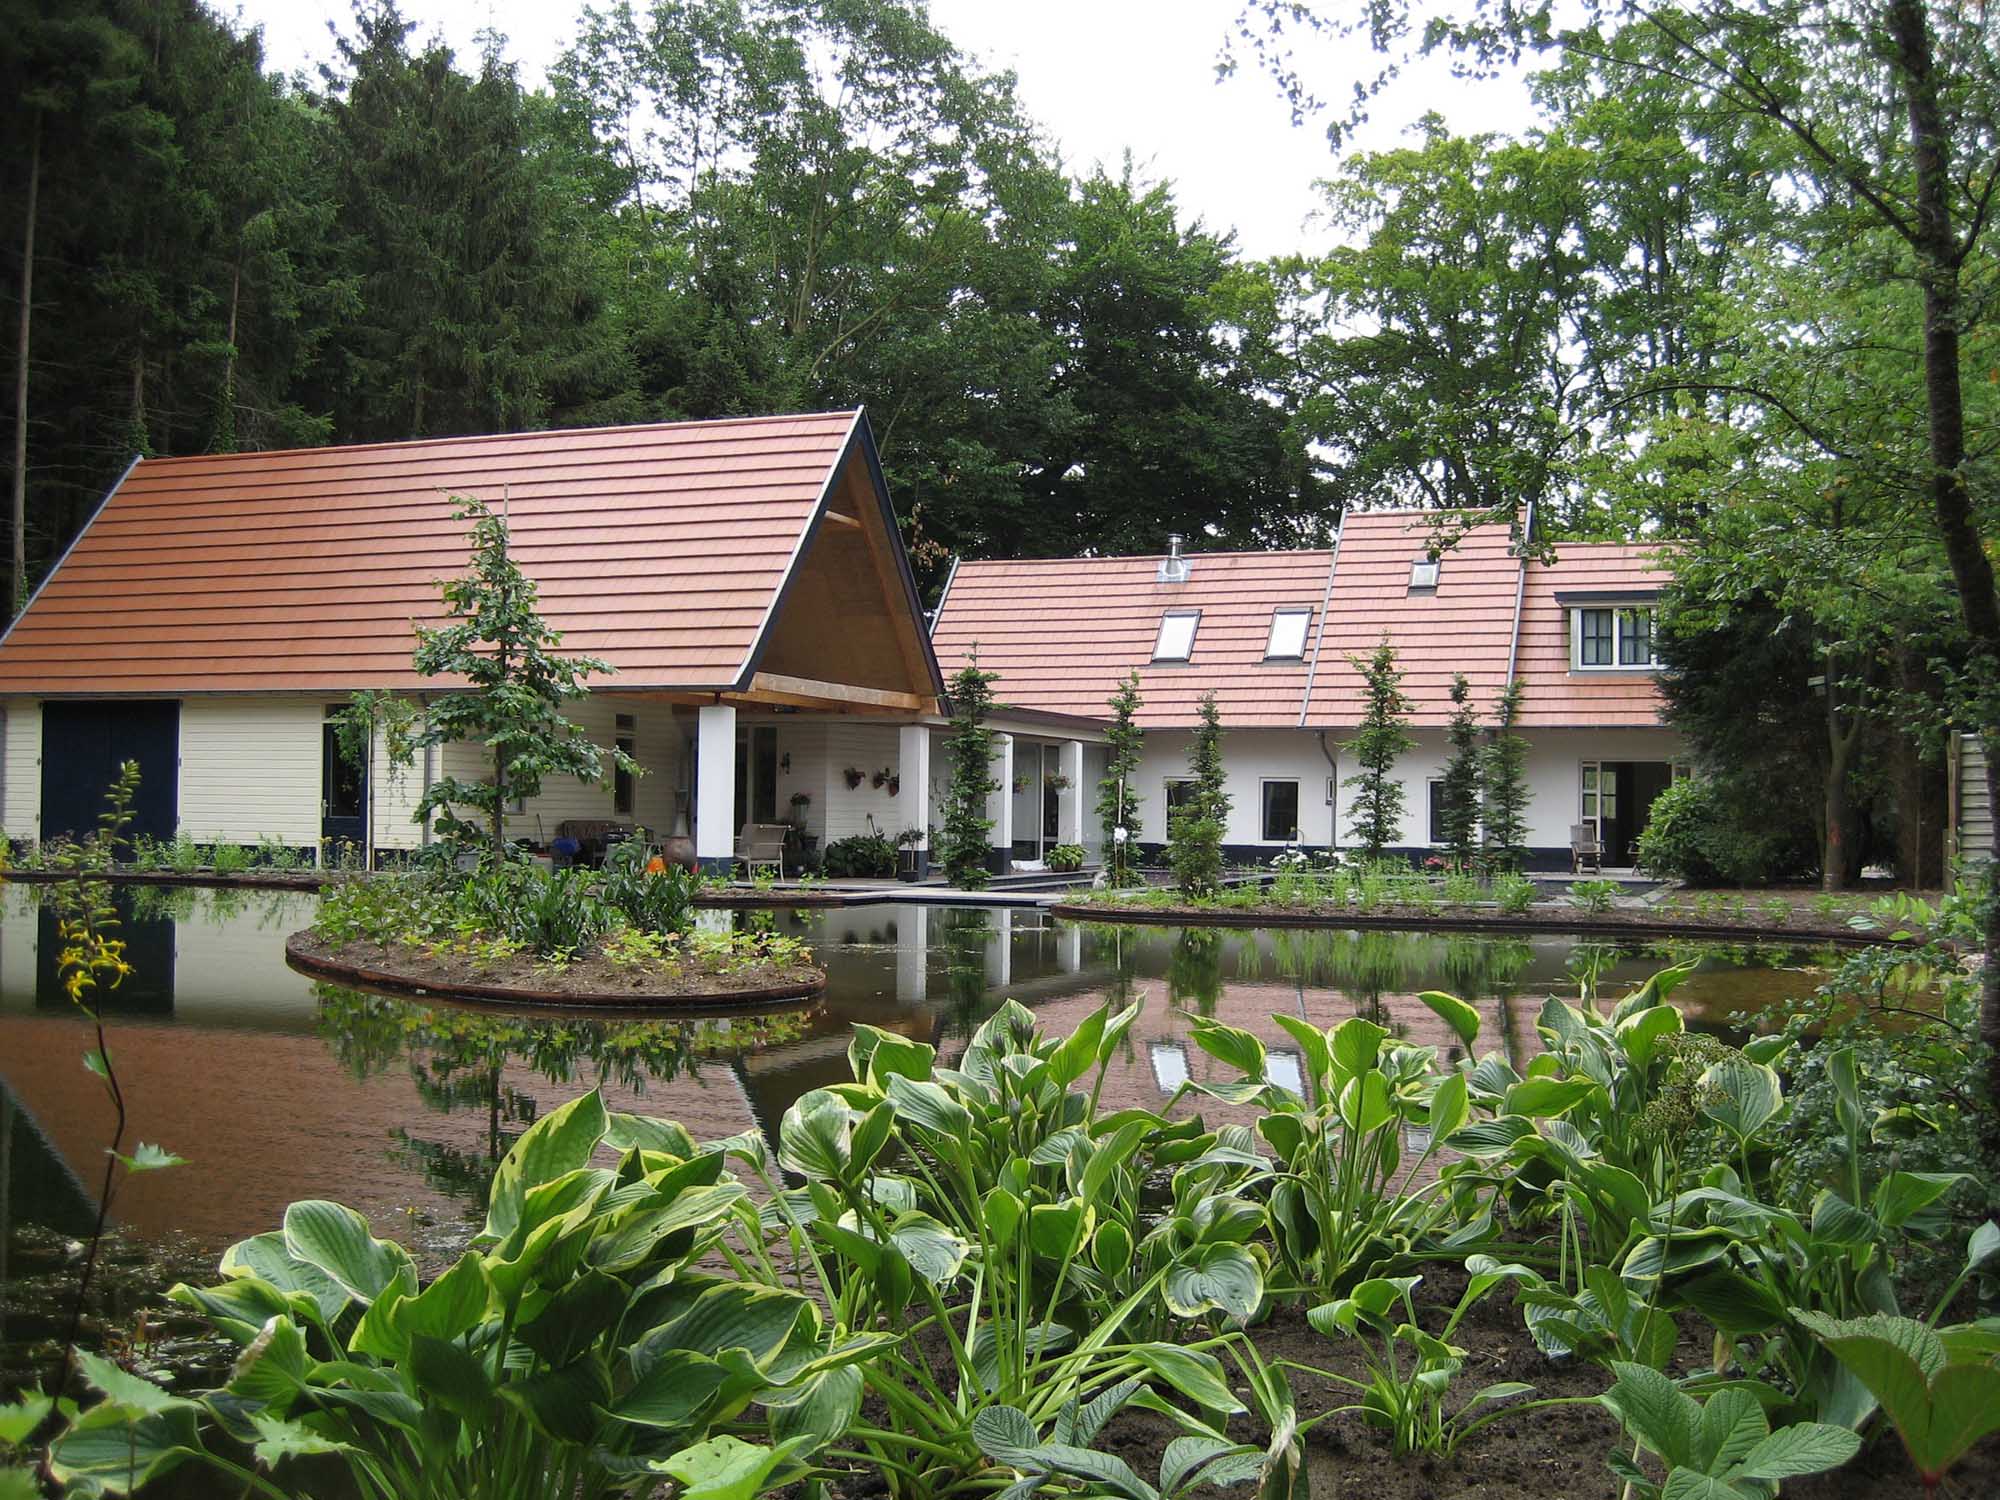 Hoveniersbedrijf G.Weultjes Vaassen watertuin Wenum Wiesel gezelschap vijver met eiland.jpg